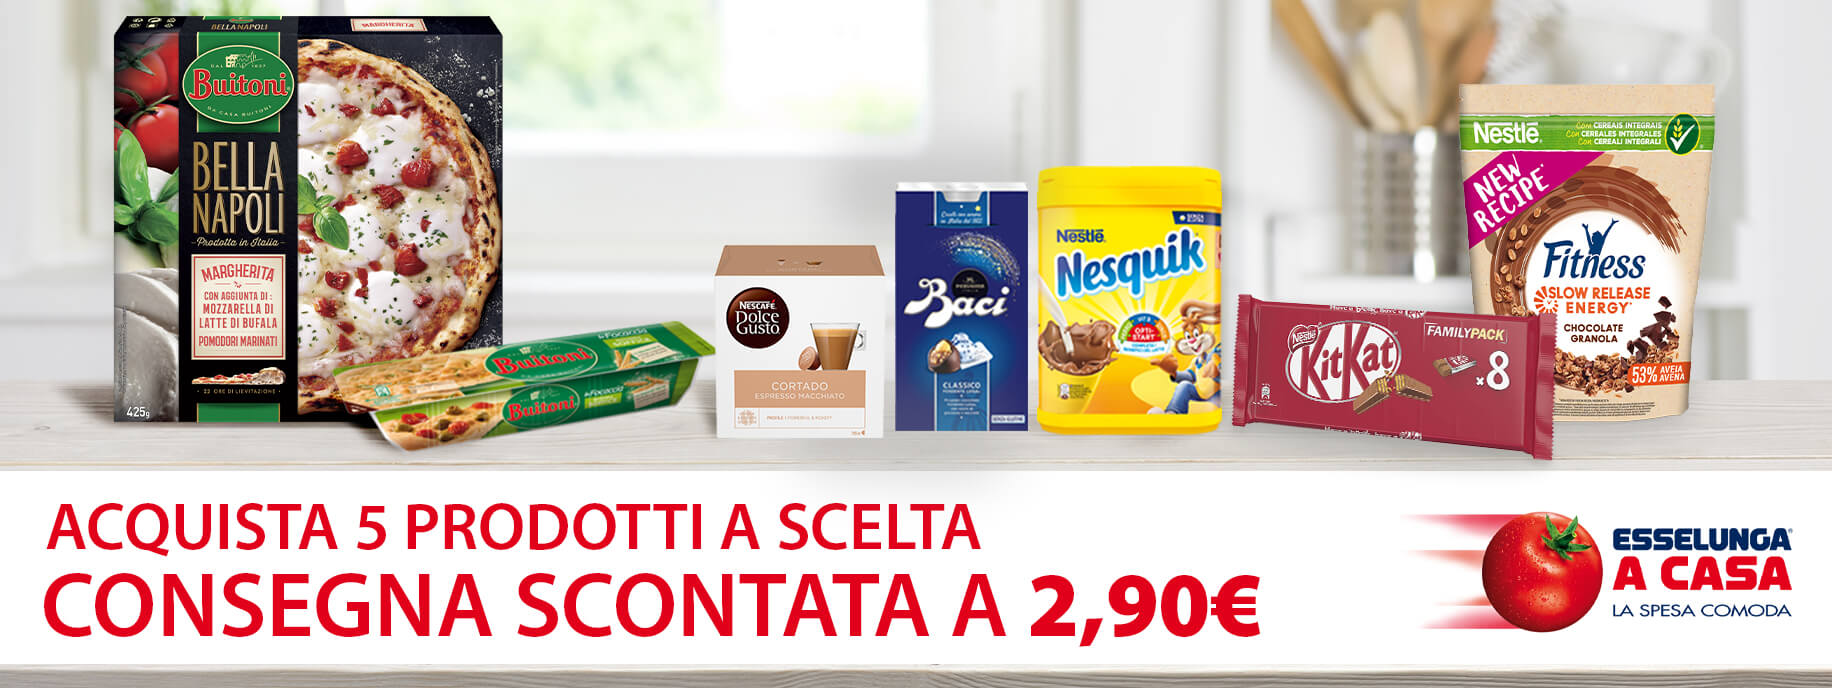 Acquista prodotti Nestlé in promozione su esselungaacasa.it, avrai la consegna scontata